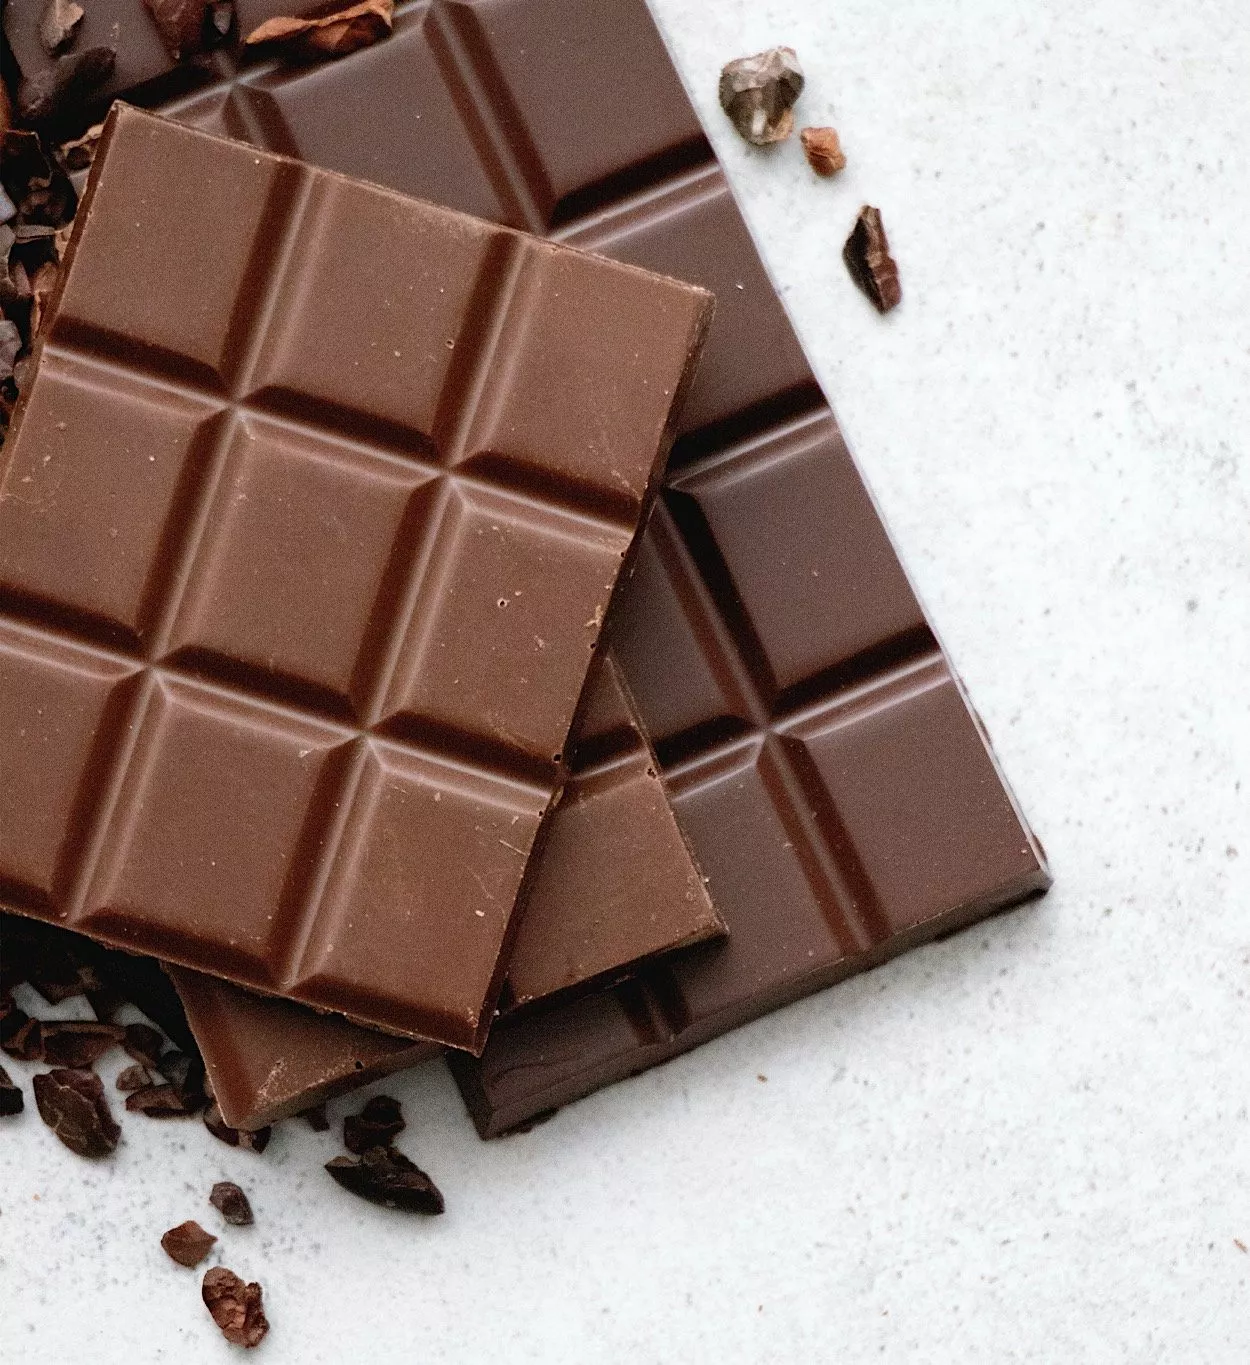 Süße Freude im Sommer: So kommt deine Schokolade auch bei großer Hitze sicher an! 1